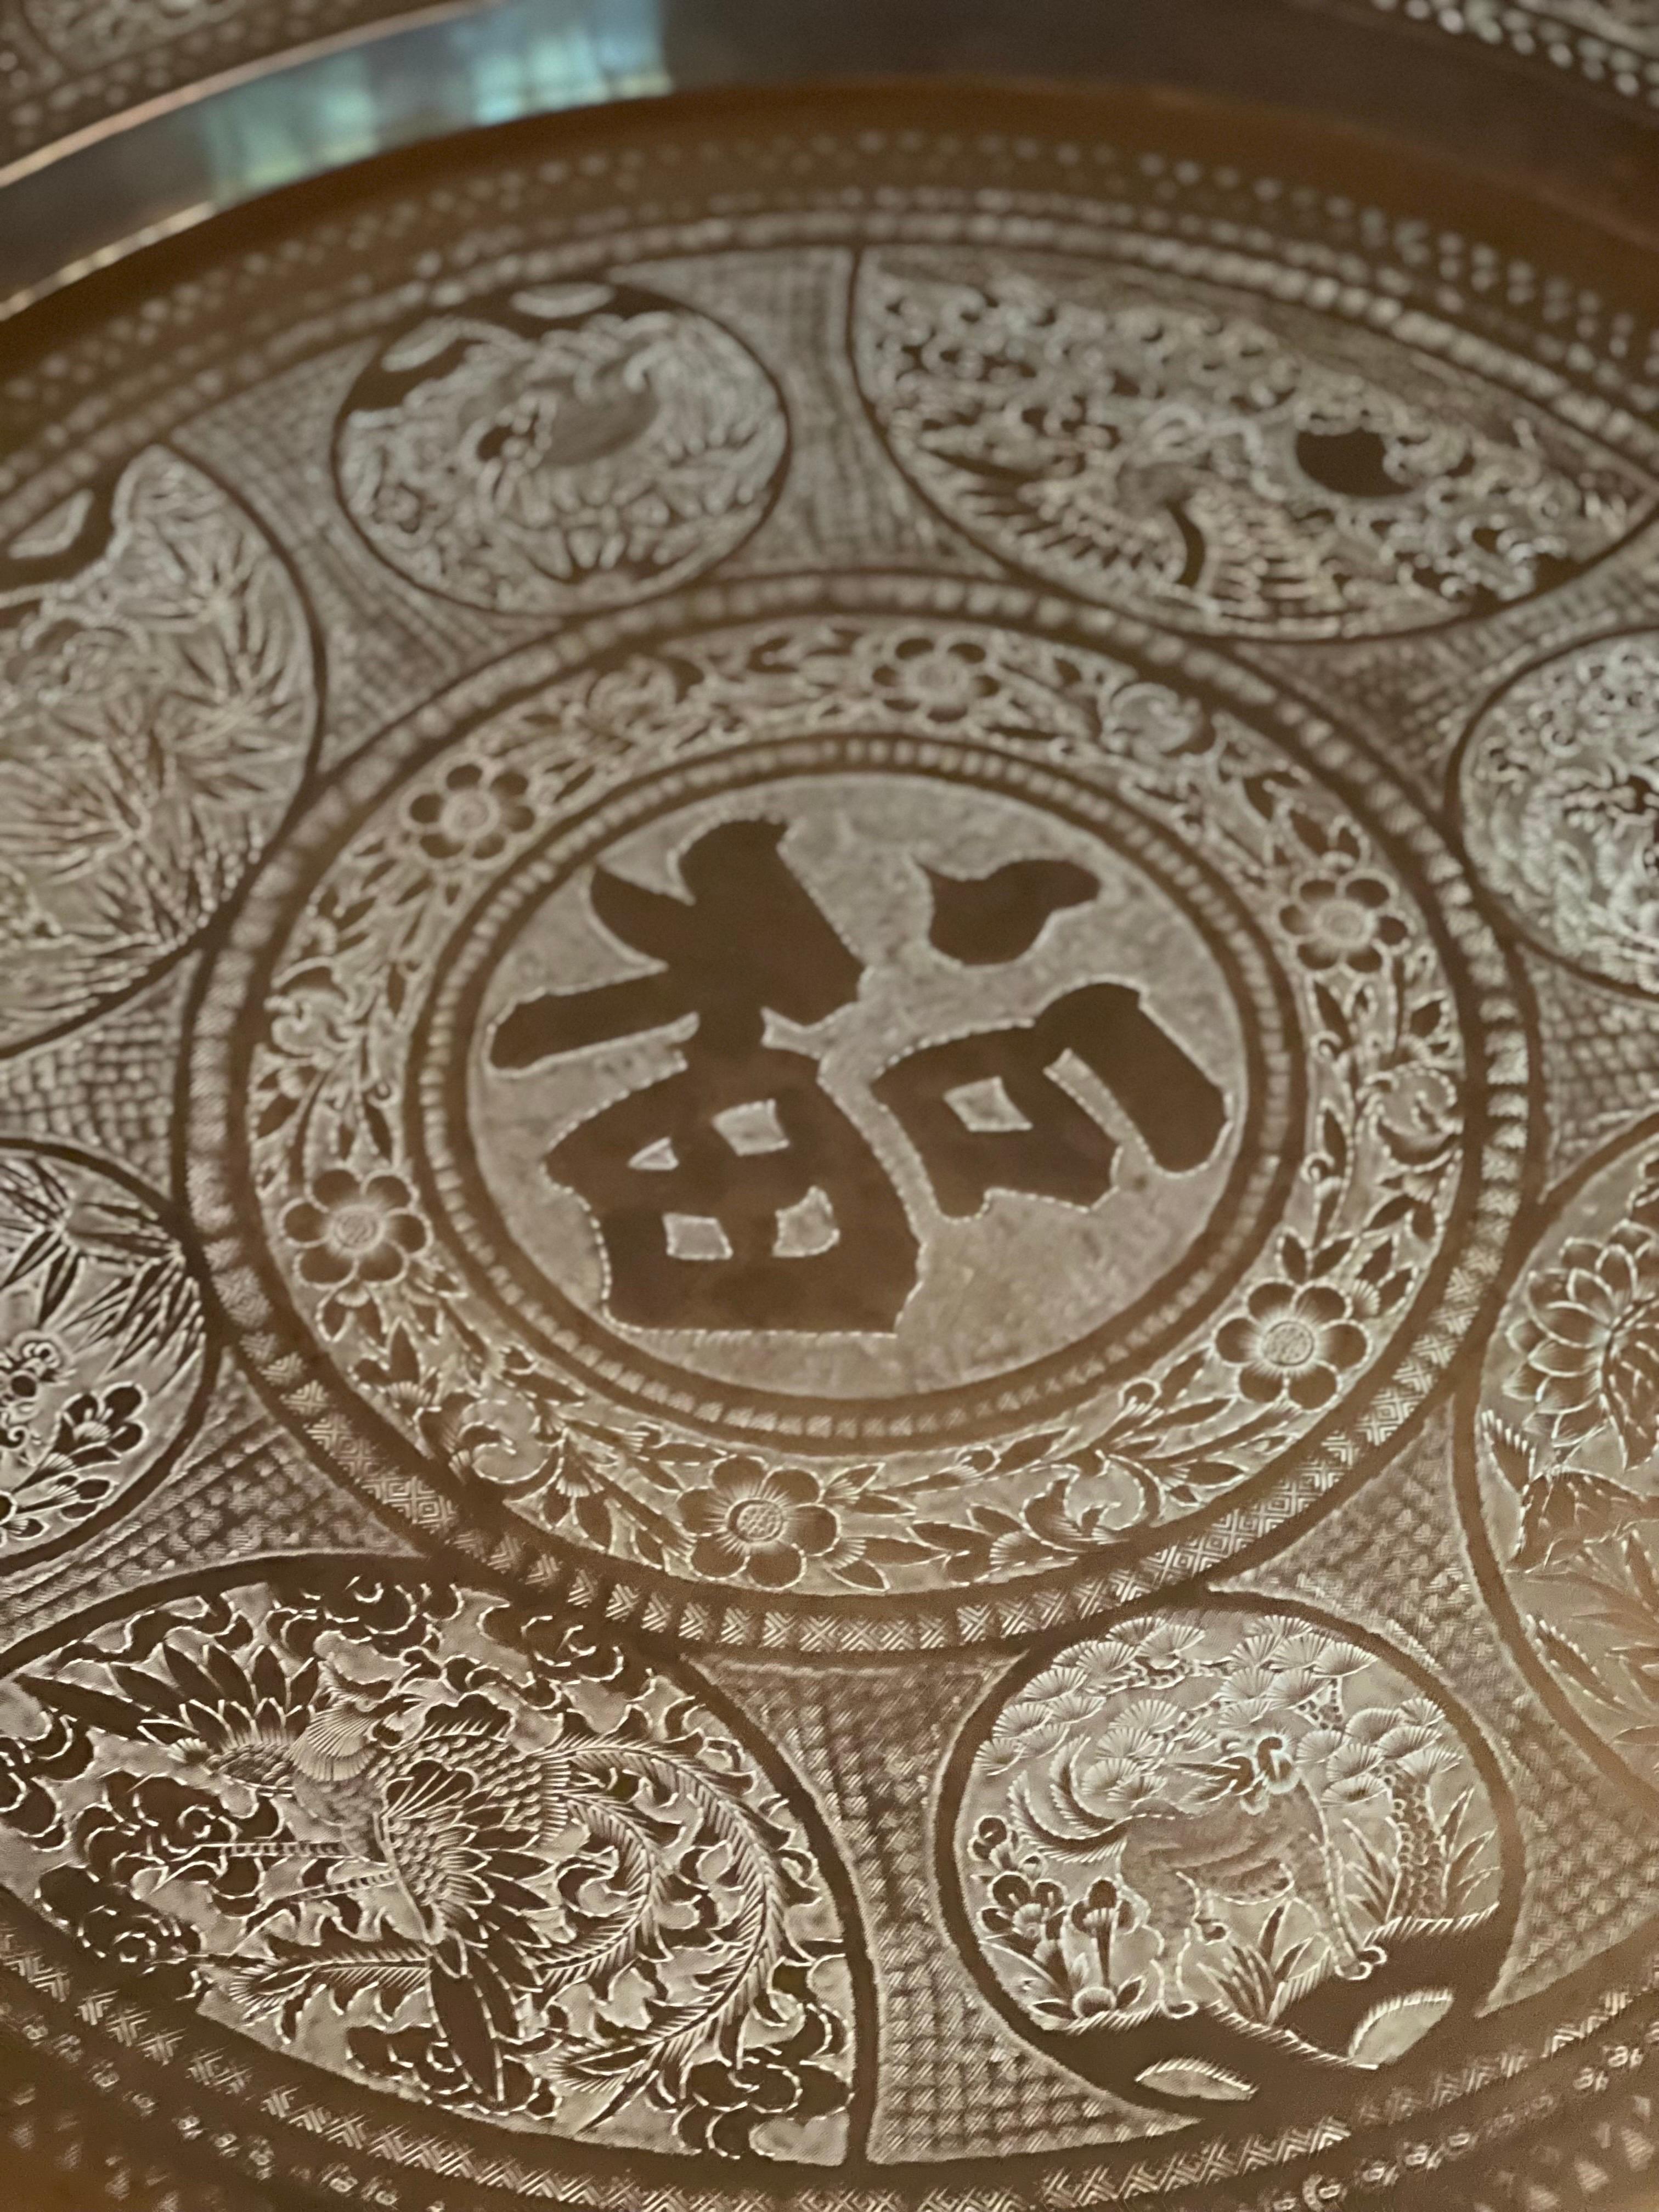 Antiker indo-persischer, handgefertigter Tisch aus gehämmertem Messing. Das Tablett ist mit verschiedenen handgeschnitzten Blumen- und Tiermotiven in arabischer Kalligraphie verziert. 

Das Tablett steht sicher auf einem faltbaren Sockel aus Metall